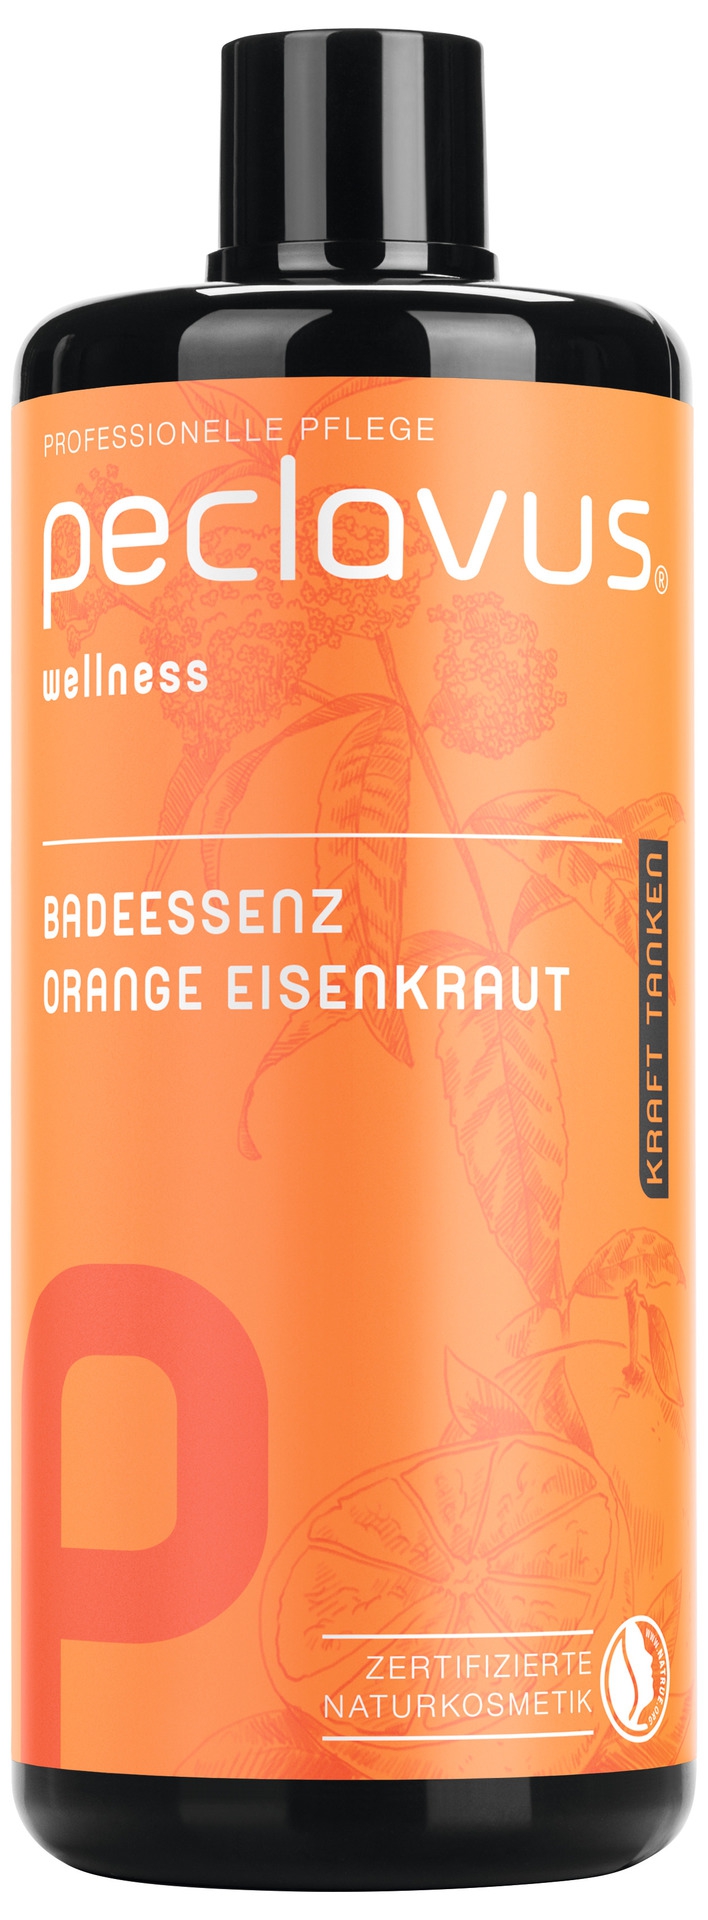 PECLAVUS Badeessenz Orange Eisenkraut | Kraft tanken 500 ml